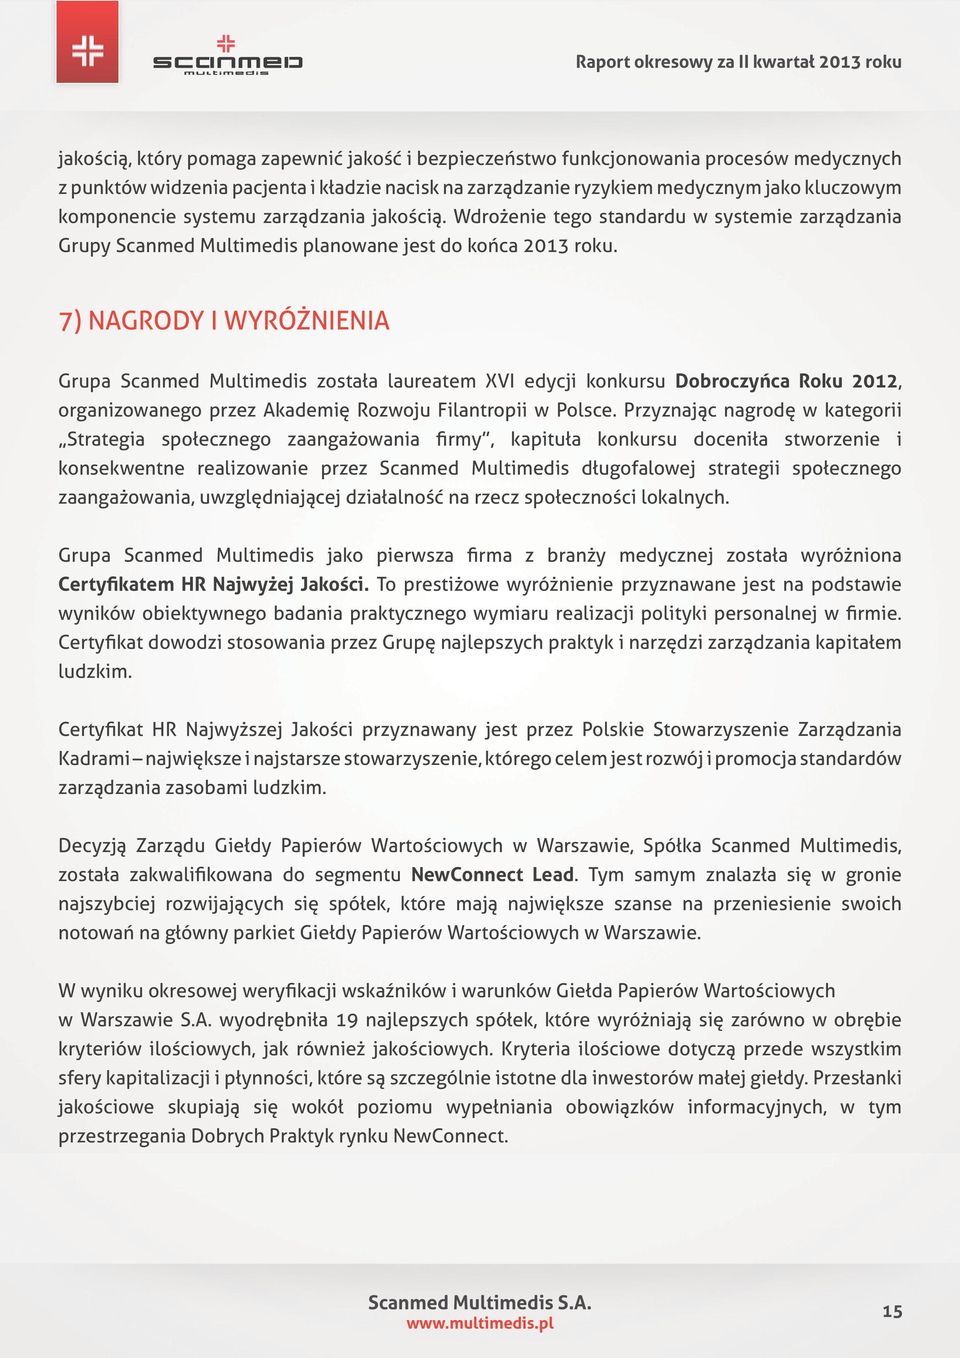 7) Nagrody i wyróżnienia Grupa Scanmed Multimedis została laureatem XVI edycji konkursu Dobroczyńca Roku 2012, organizowanego przez Akademię Rozwoju Filantropii w Polsce.